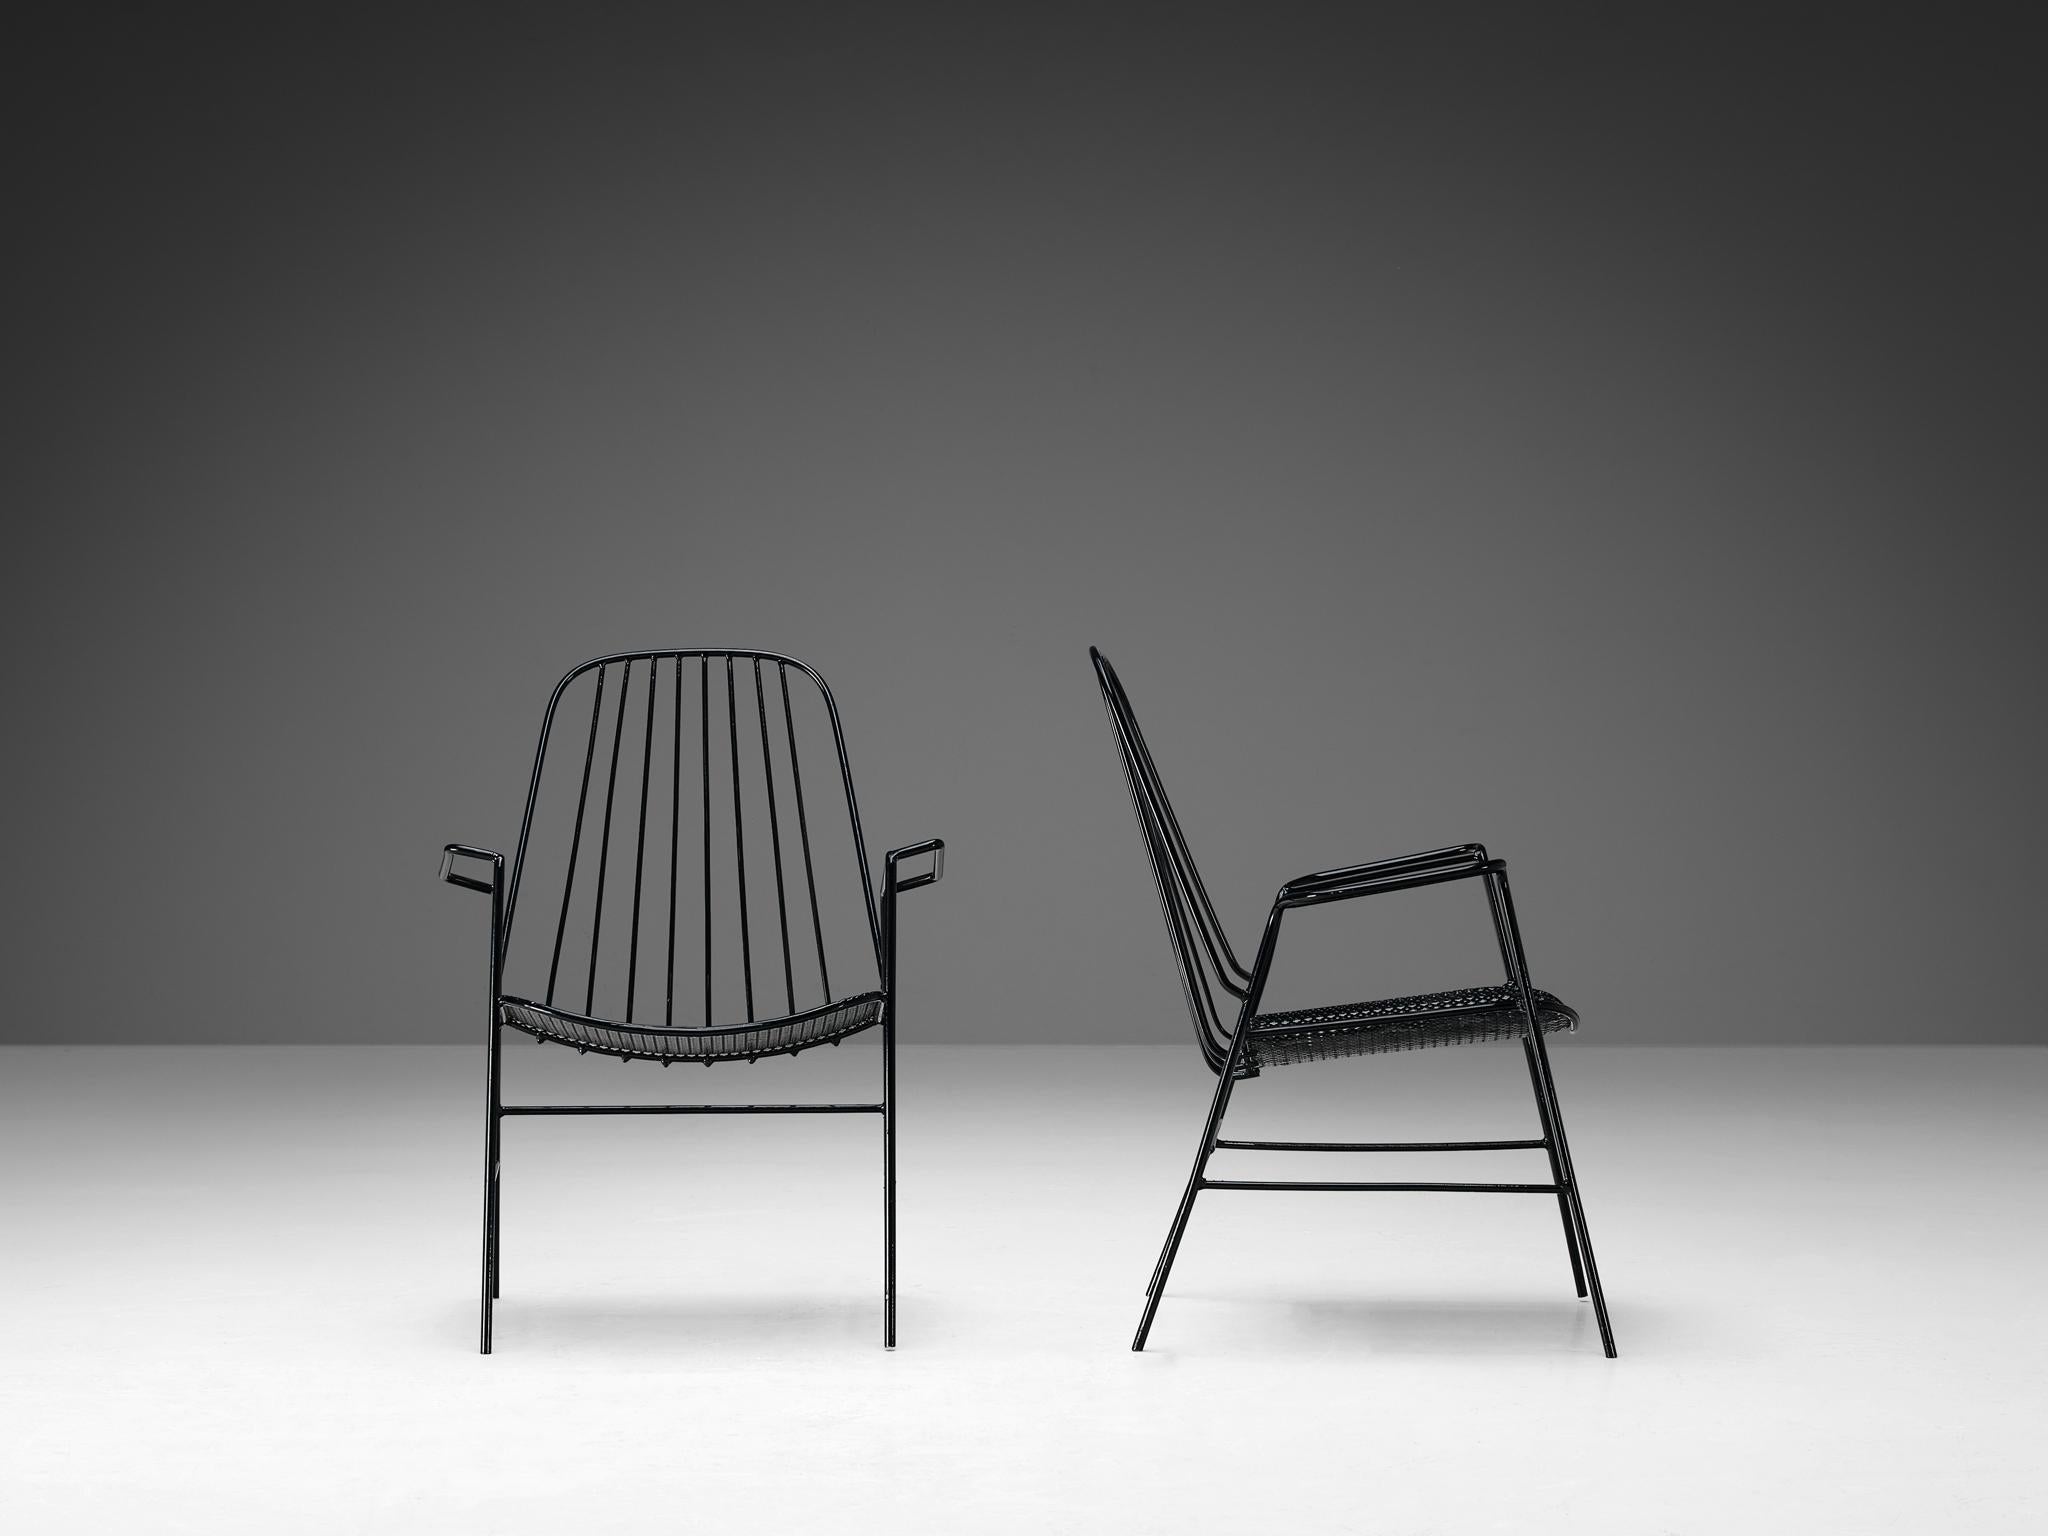 Paire de fauteuils de terrasse en fer laqué, France, années 1970

Paire de chaises françaises définie par son aspect élégant et aérien avec son cadre ouvert et sa couleur noire singulière. Le concepteur a utilisé de la tôle perforée quadrifoil pour